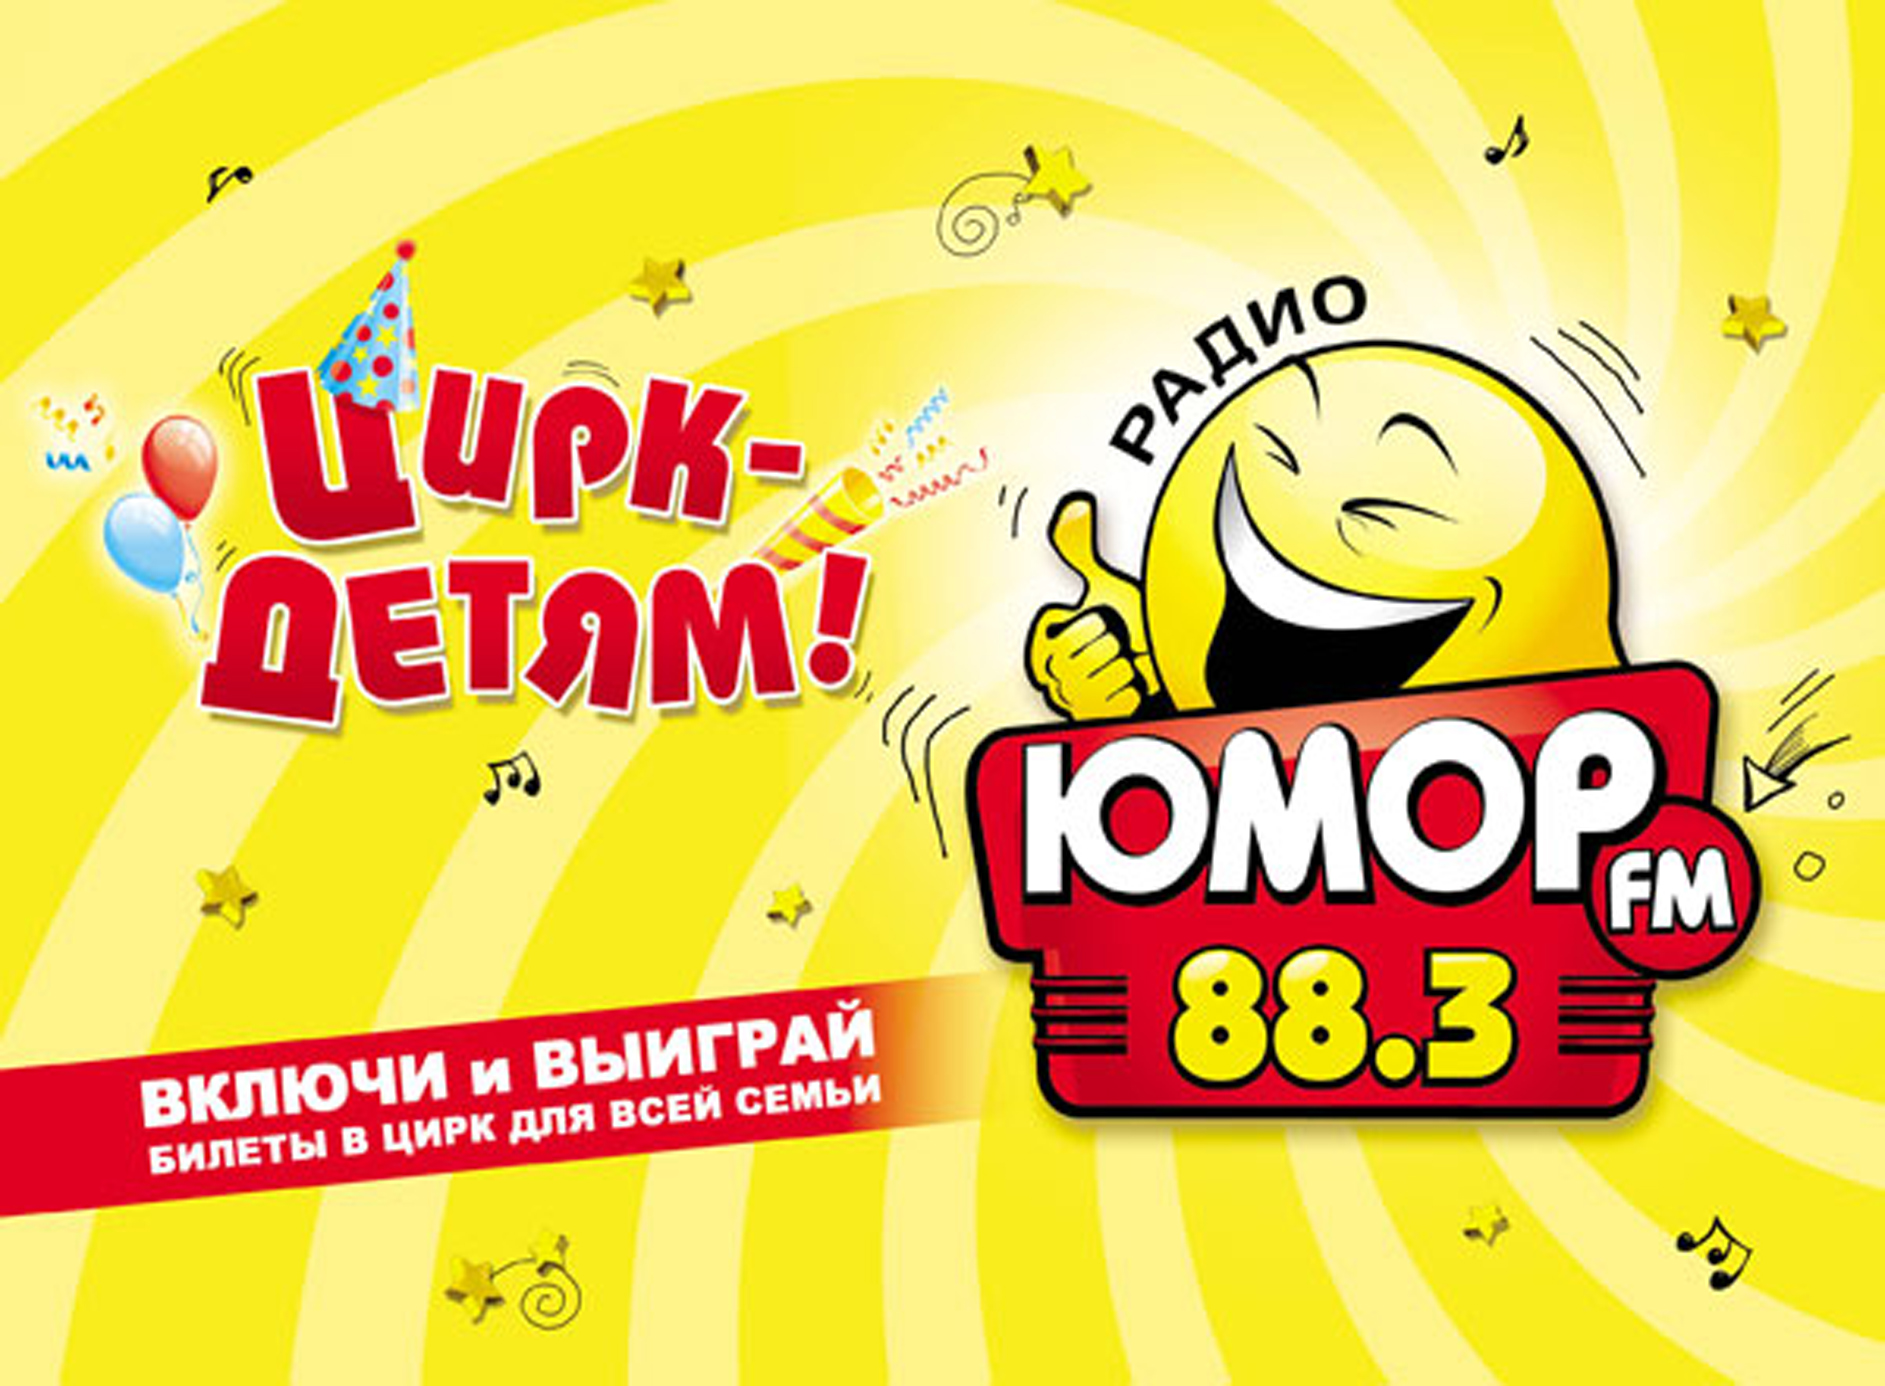 Юмор фм новосибирск слушать. Юмор fm. Юмор ФМ логотип. Радио юмор ФМ. Юмор fm Москва.